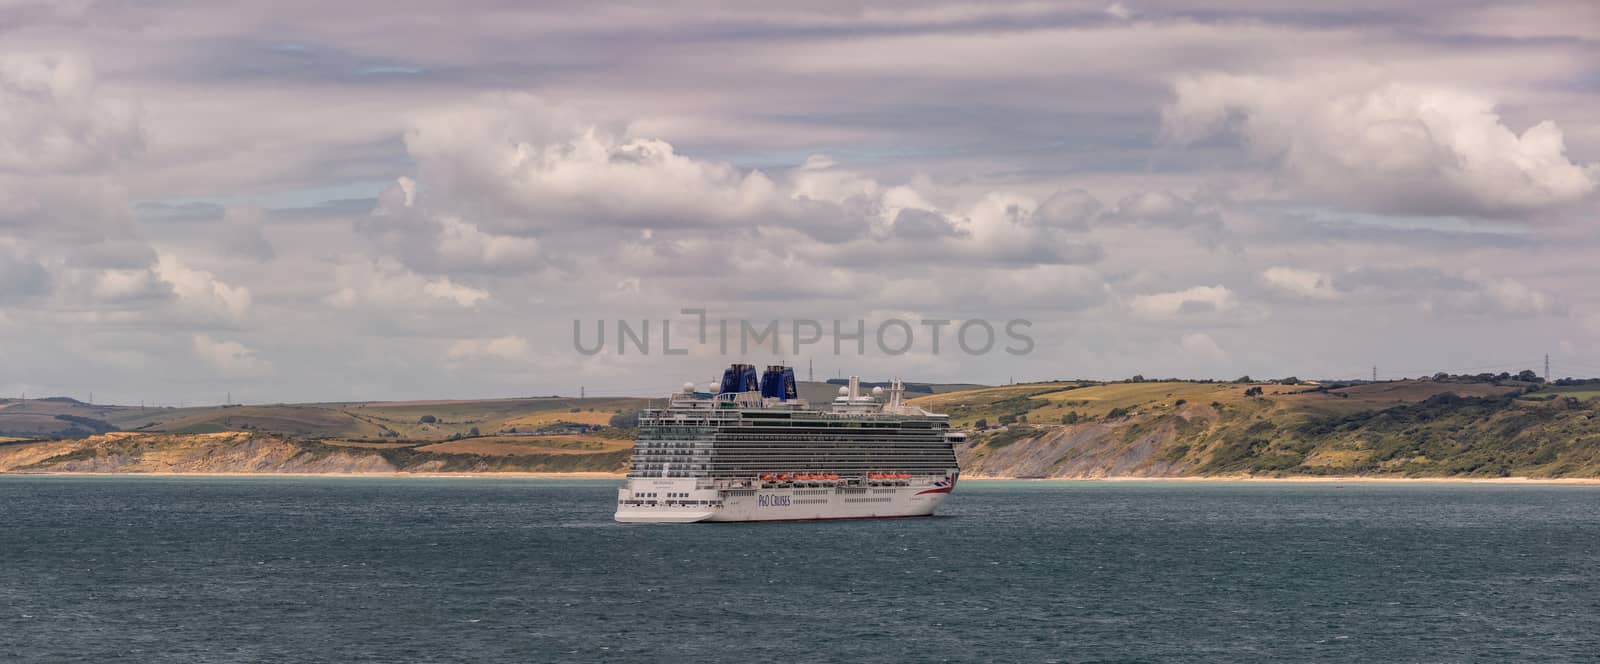 P&O cruise ship Britannia in Weymouth Bay by DamantisZ